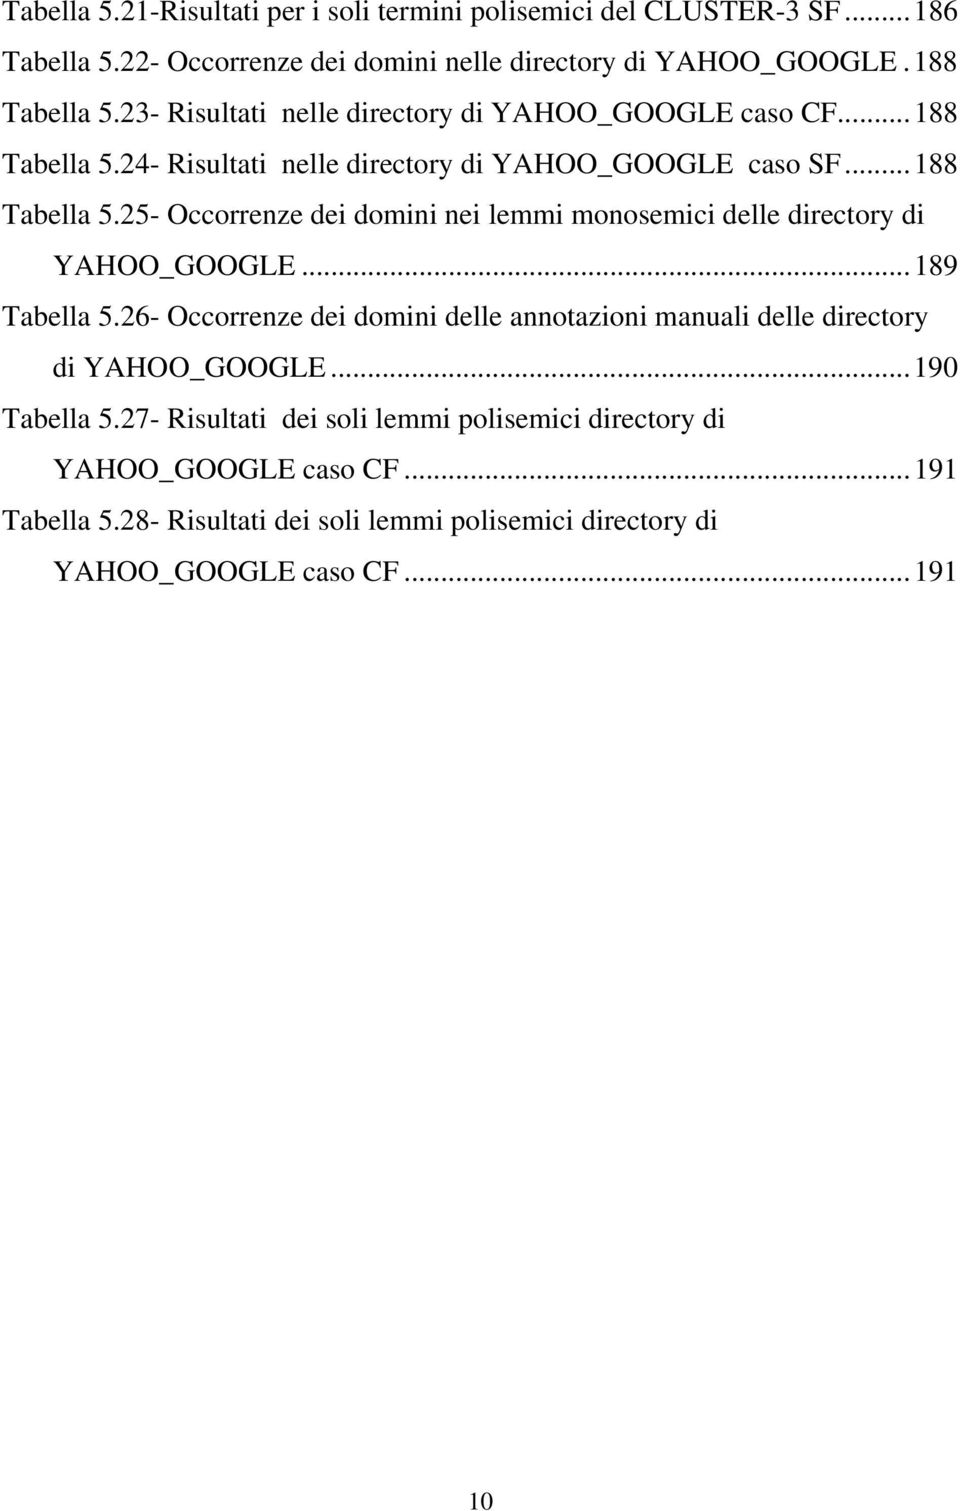 ..189 Tabella 5.26- Occorrenze dei domini delle annotazioni manuali delle directory di YAHOO_GOOGLE...190 Tabella 5.